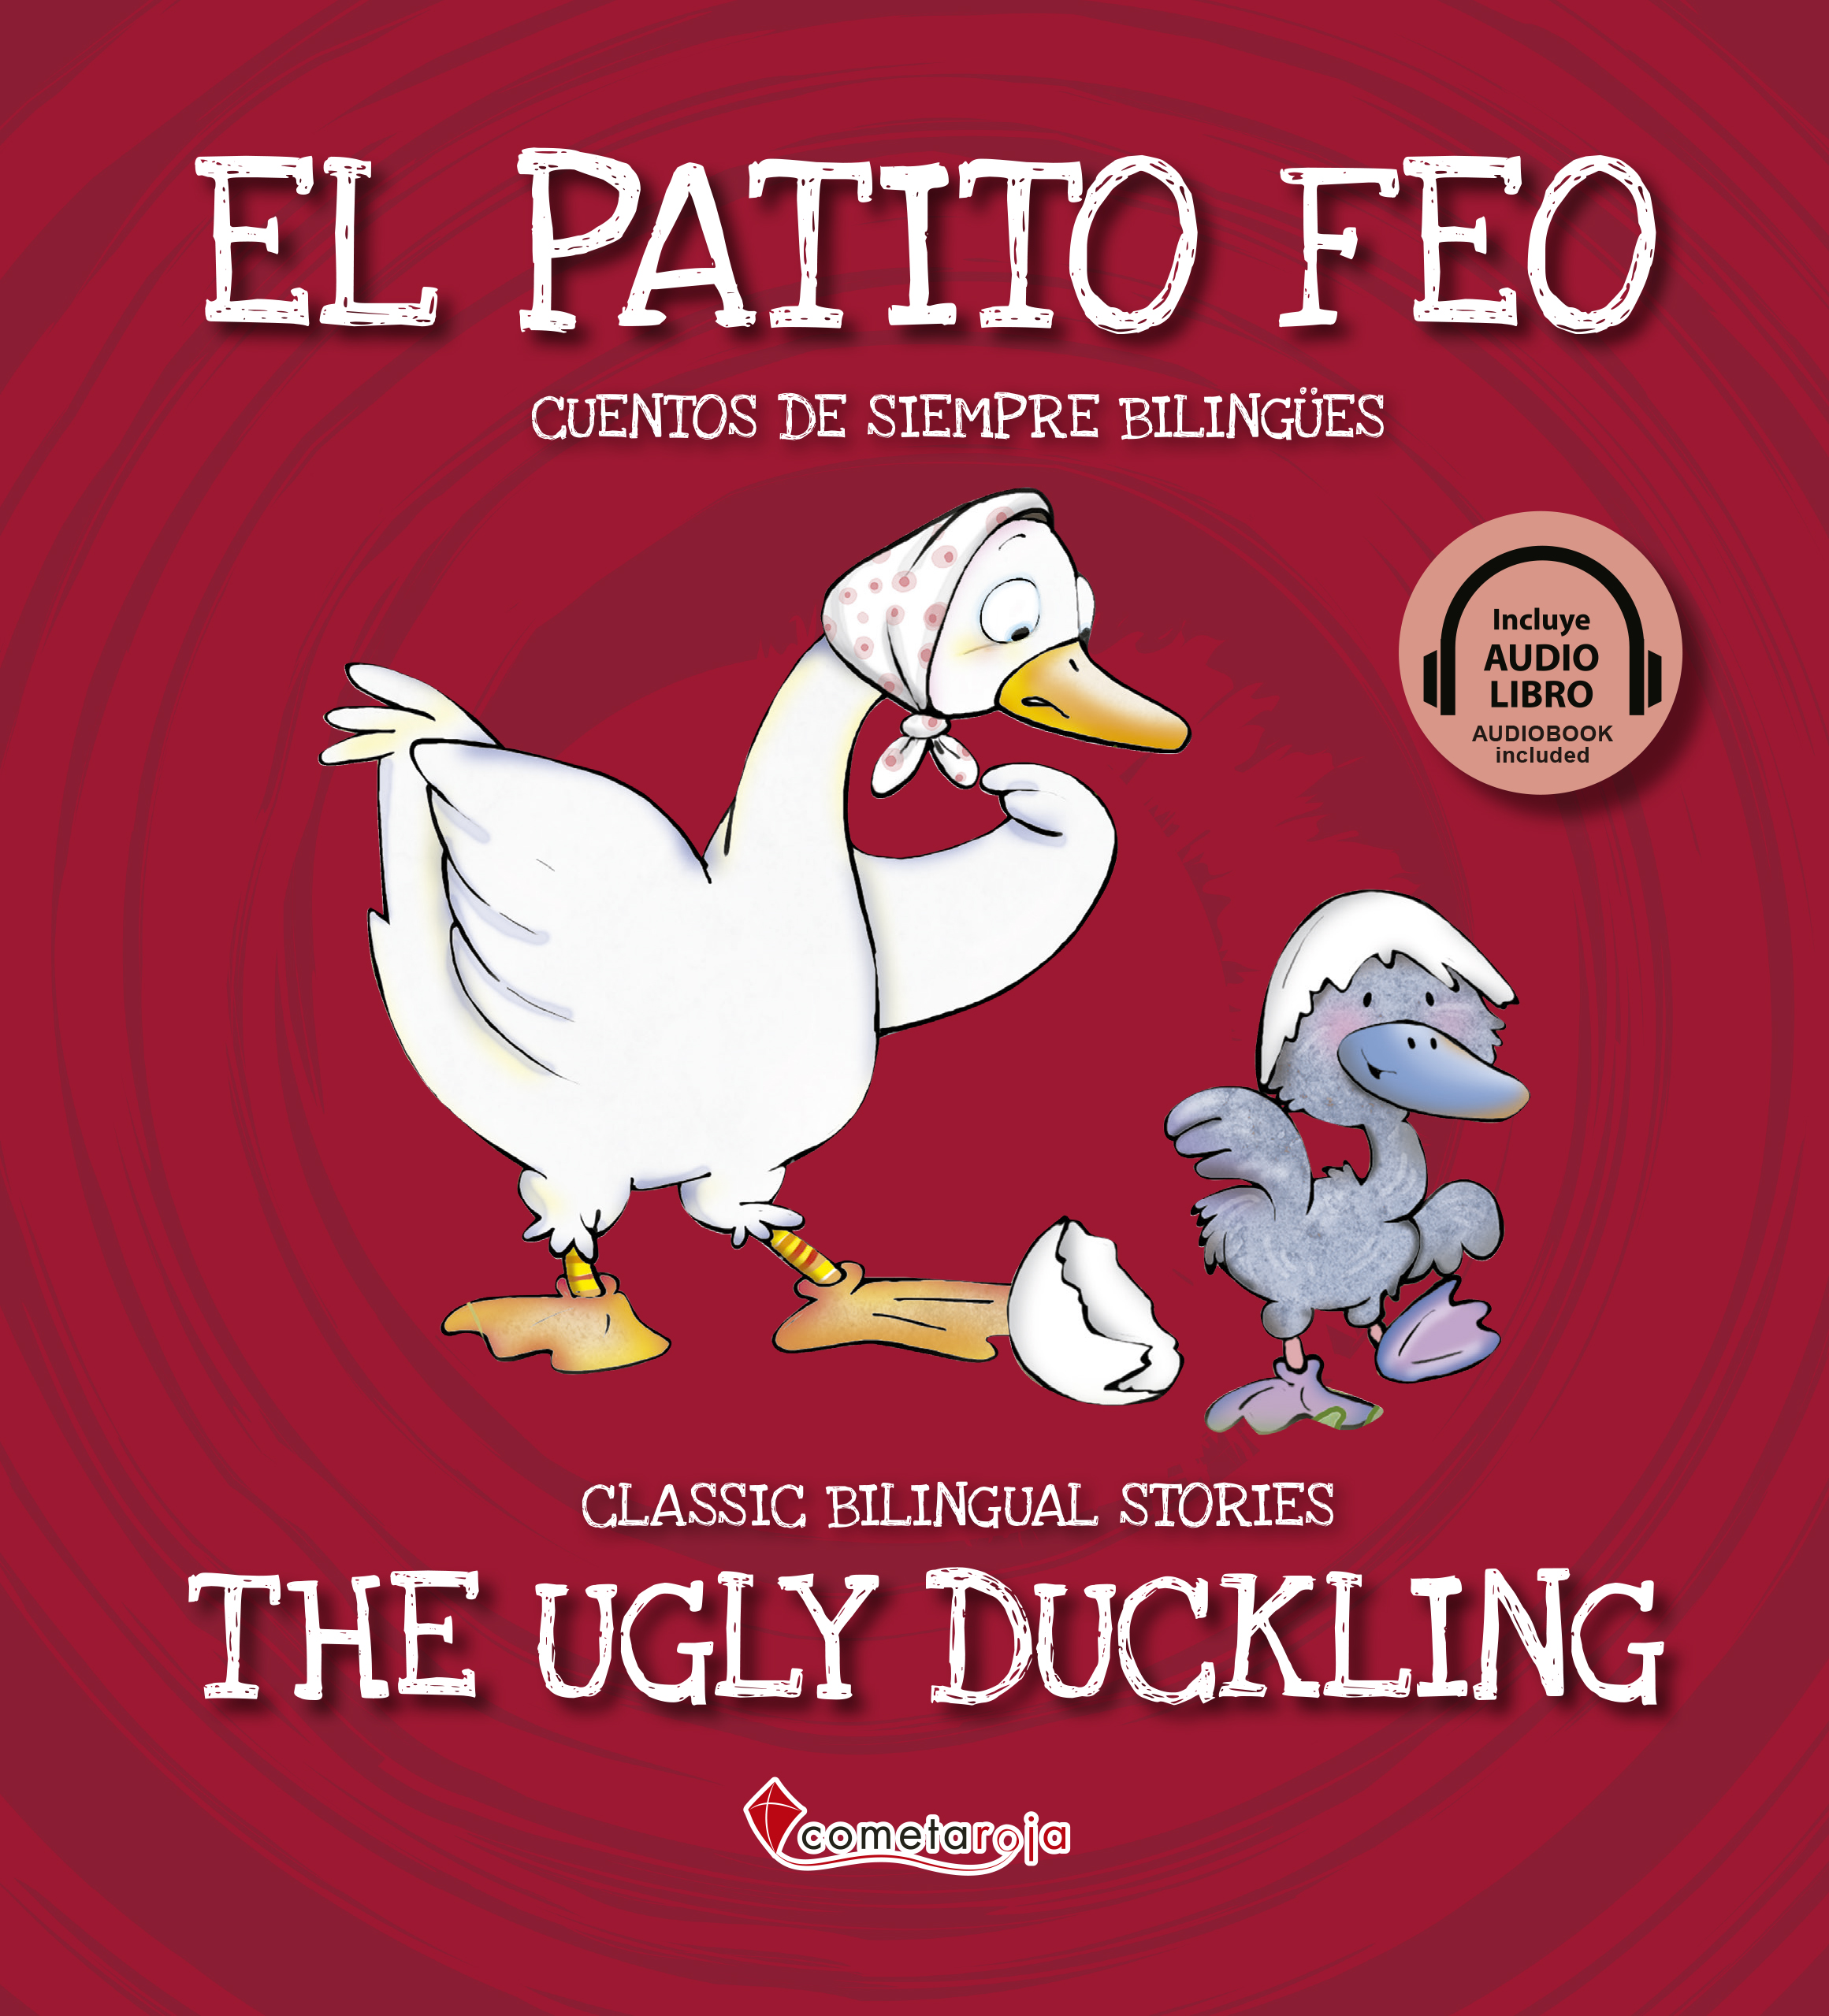 El patito feo / The ugly duckling